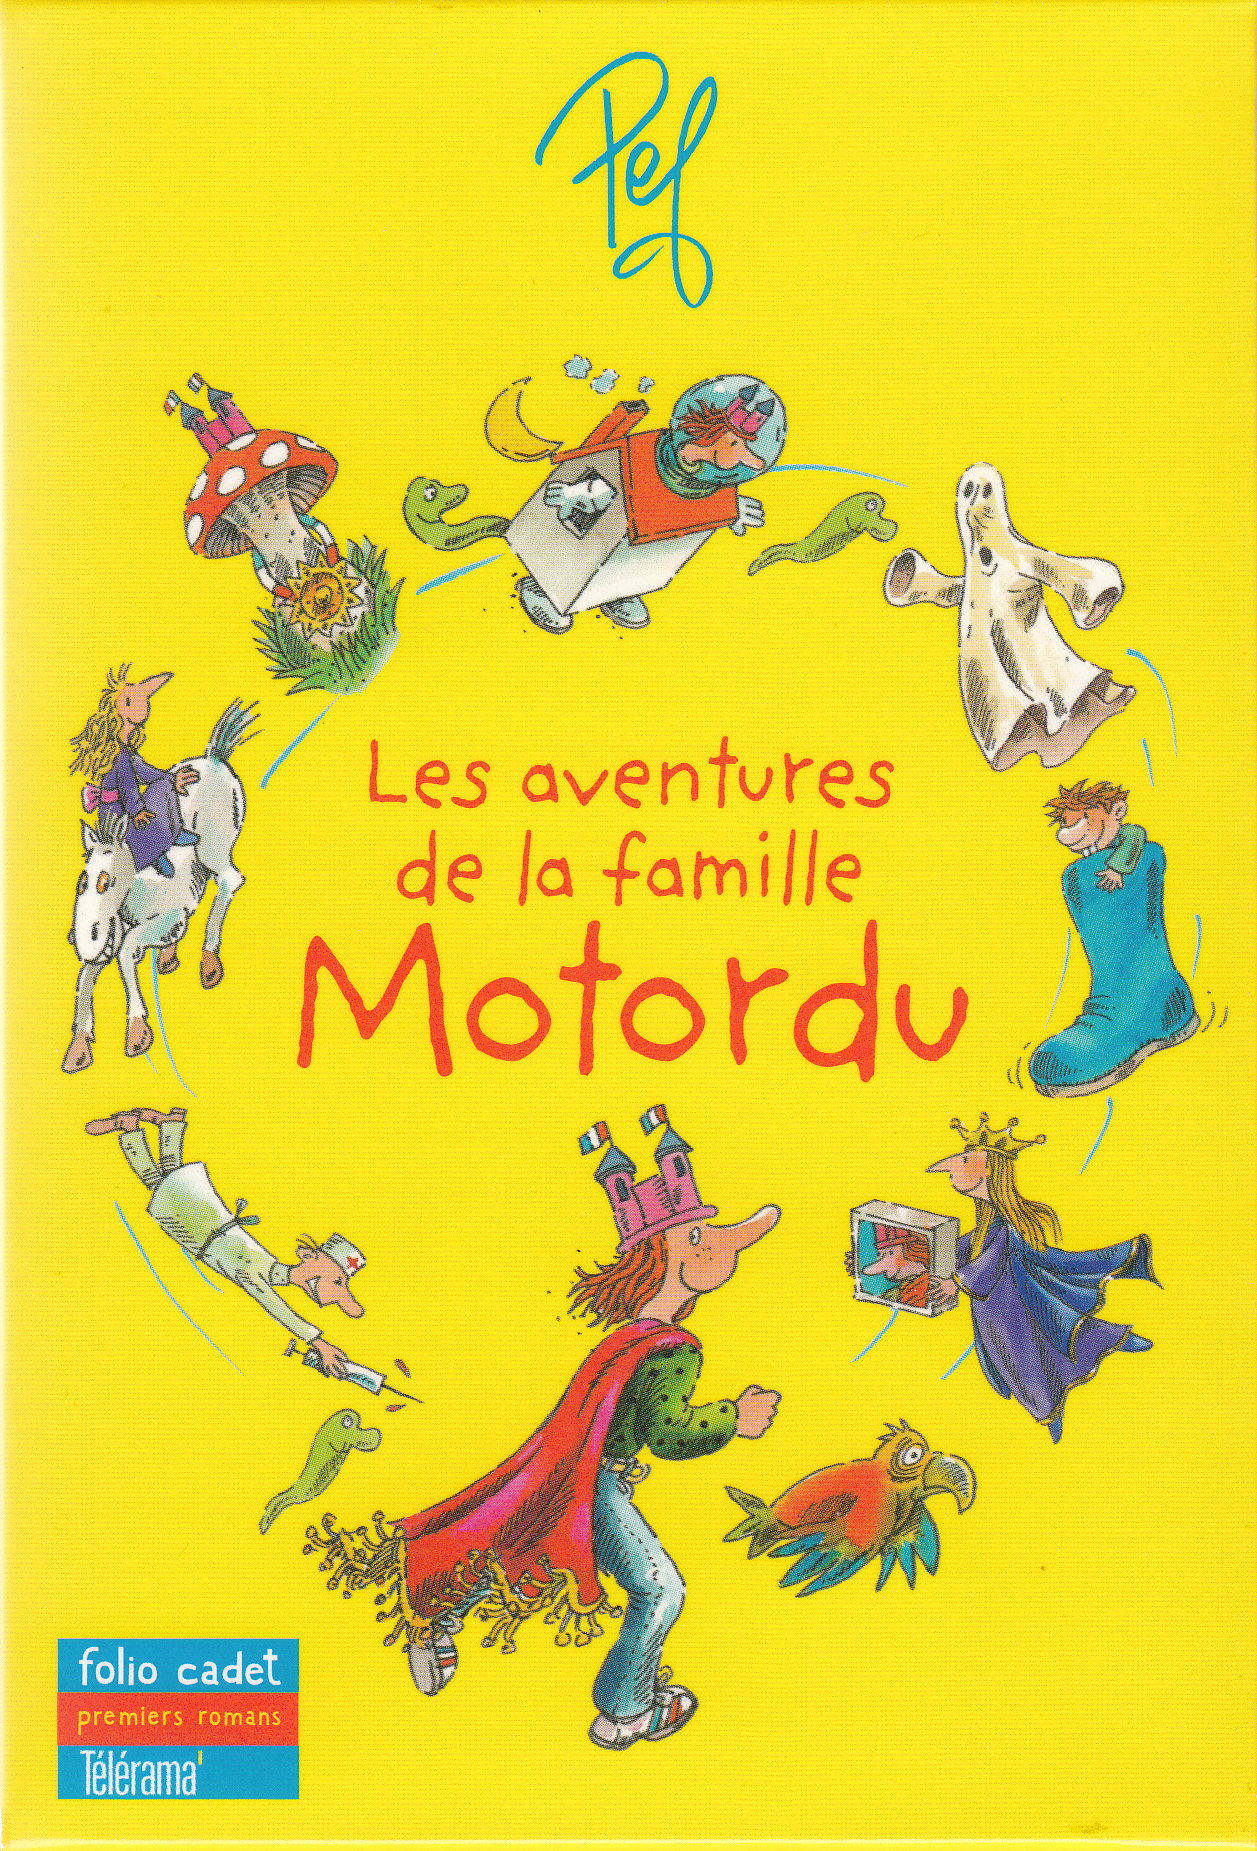 L'école de Motordu - Pef - Librairie Mollat Bordeaux